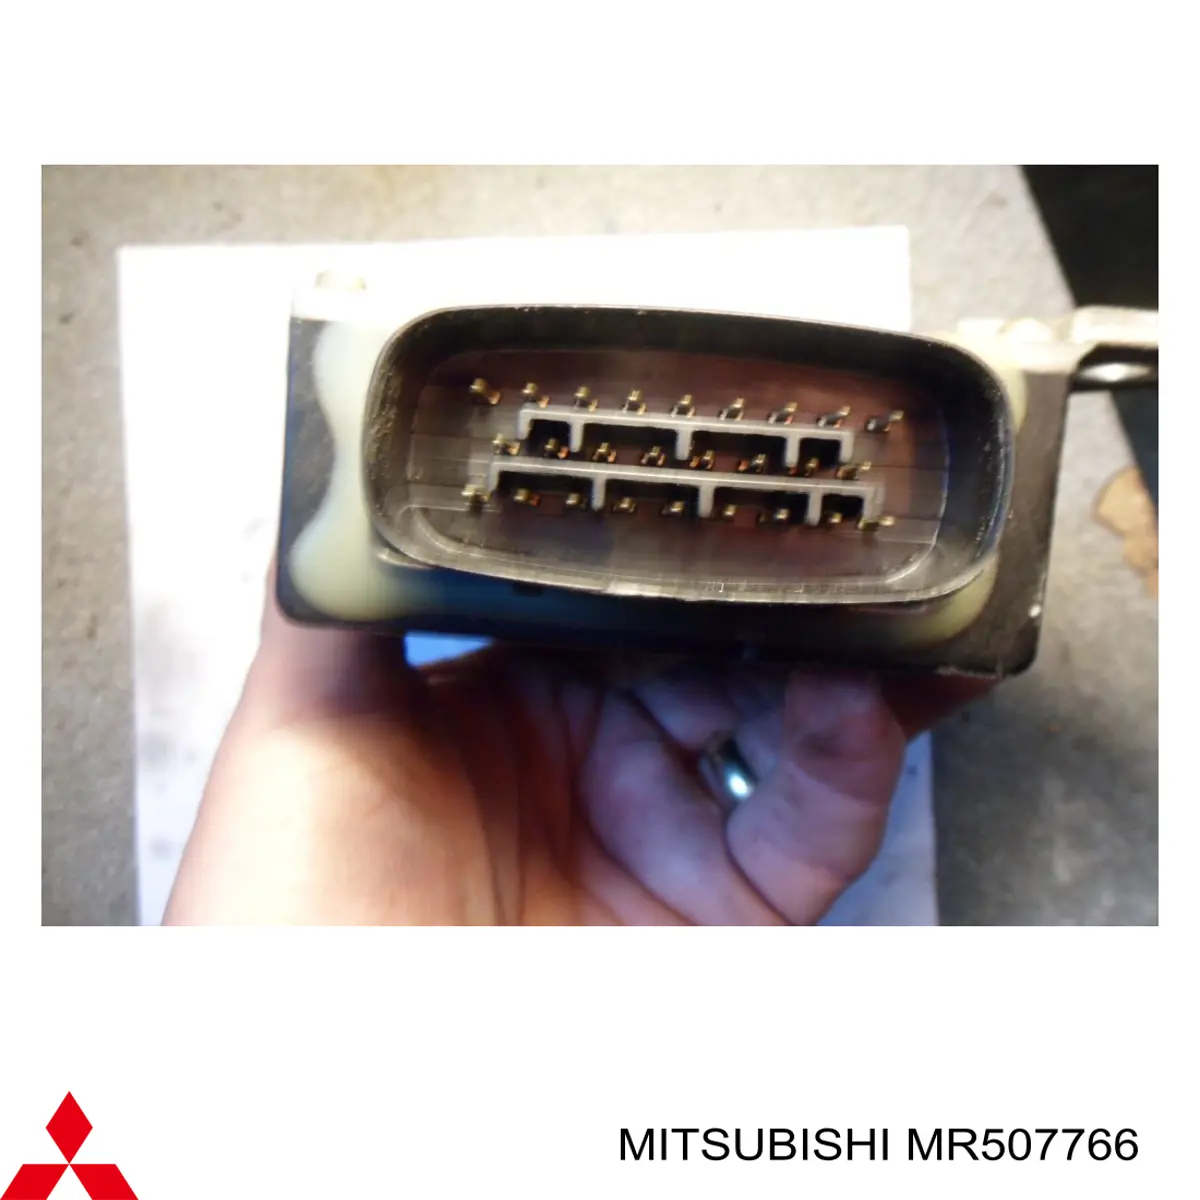 MR507766 Mitsubishi